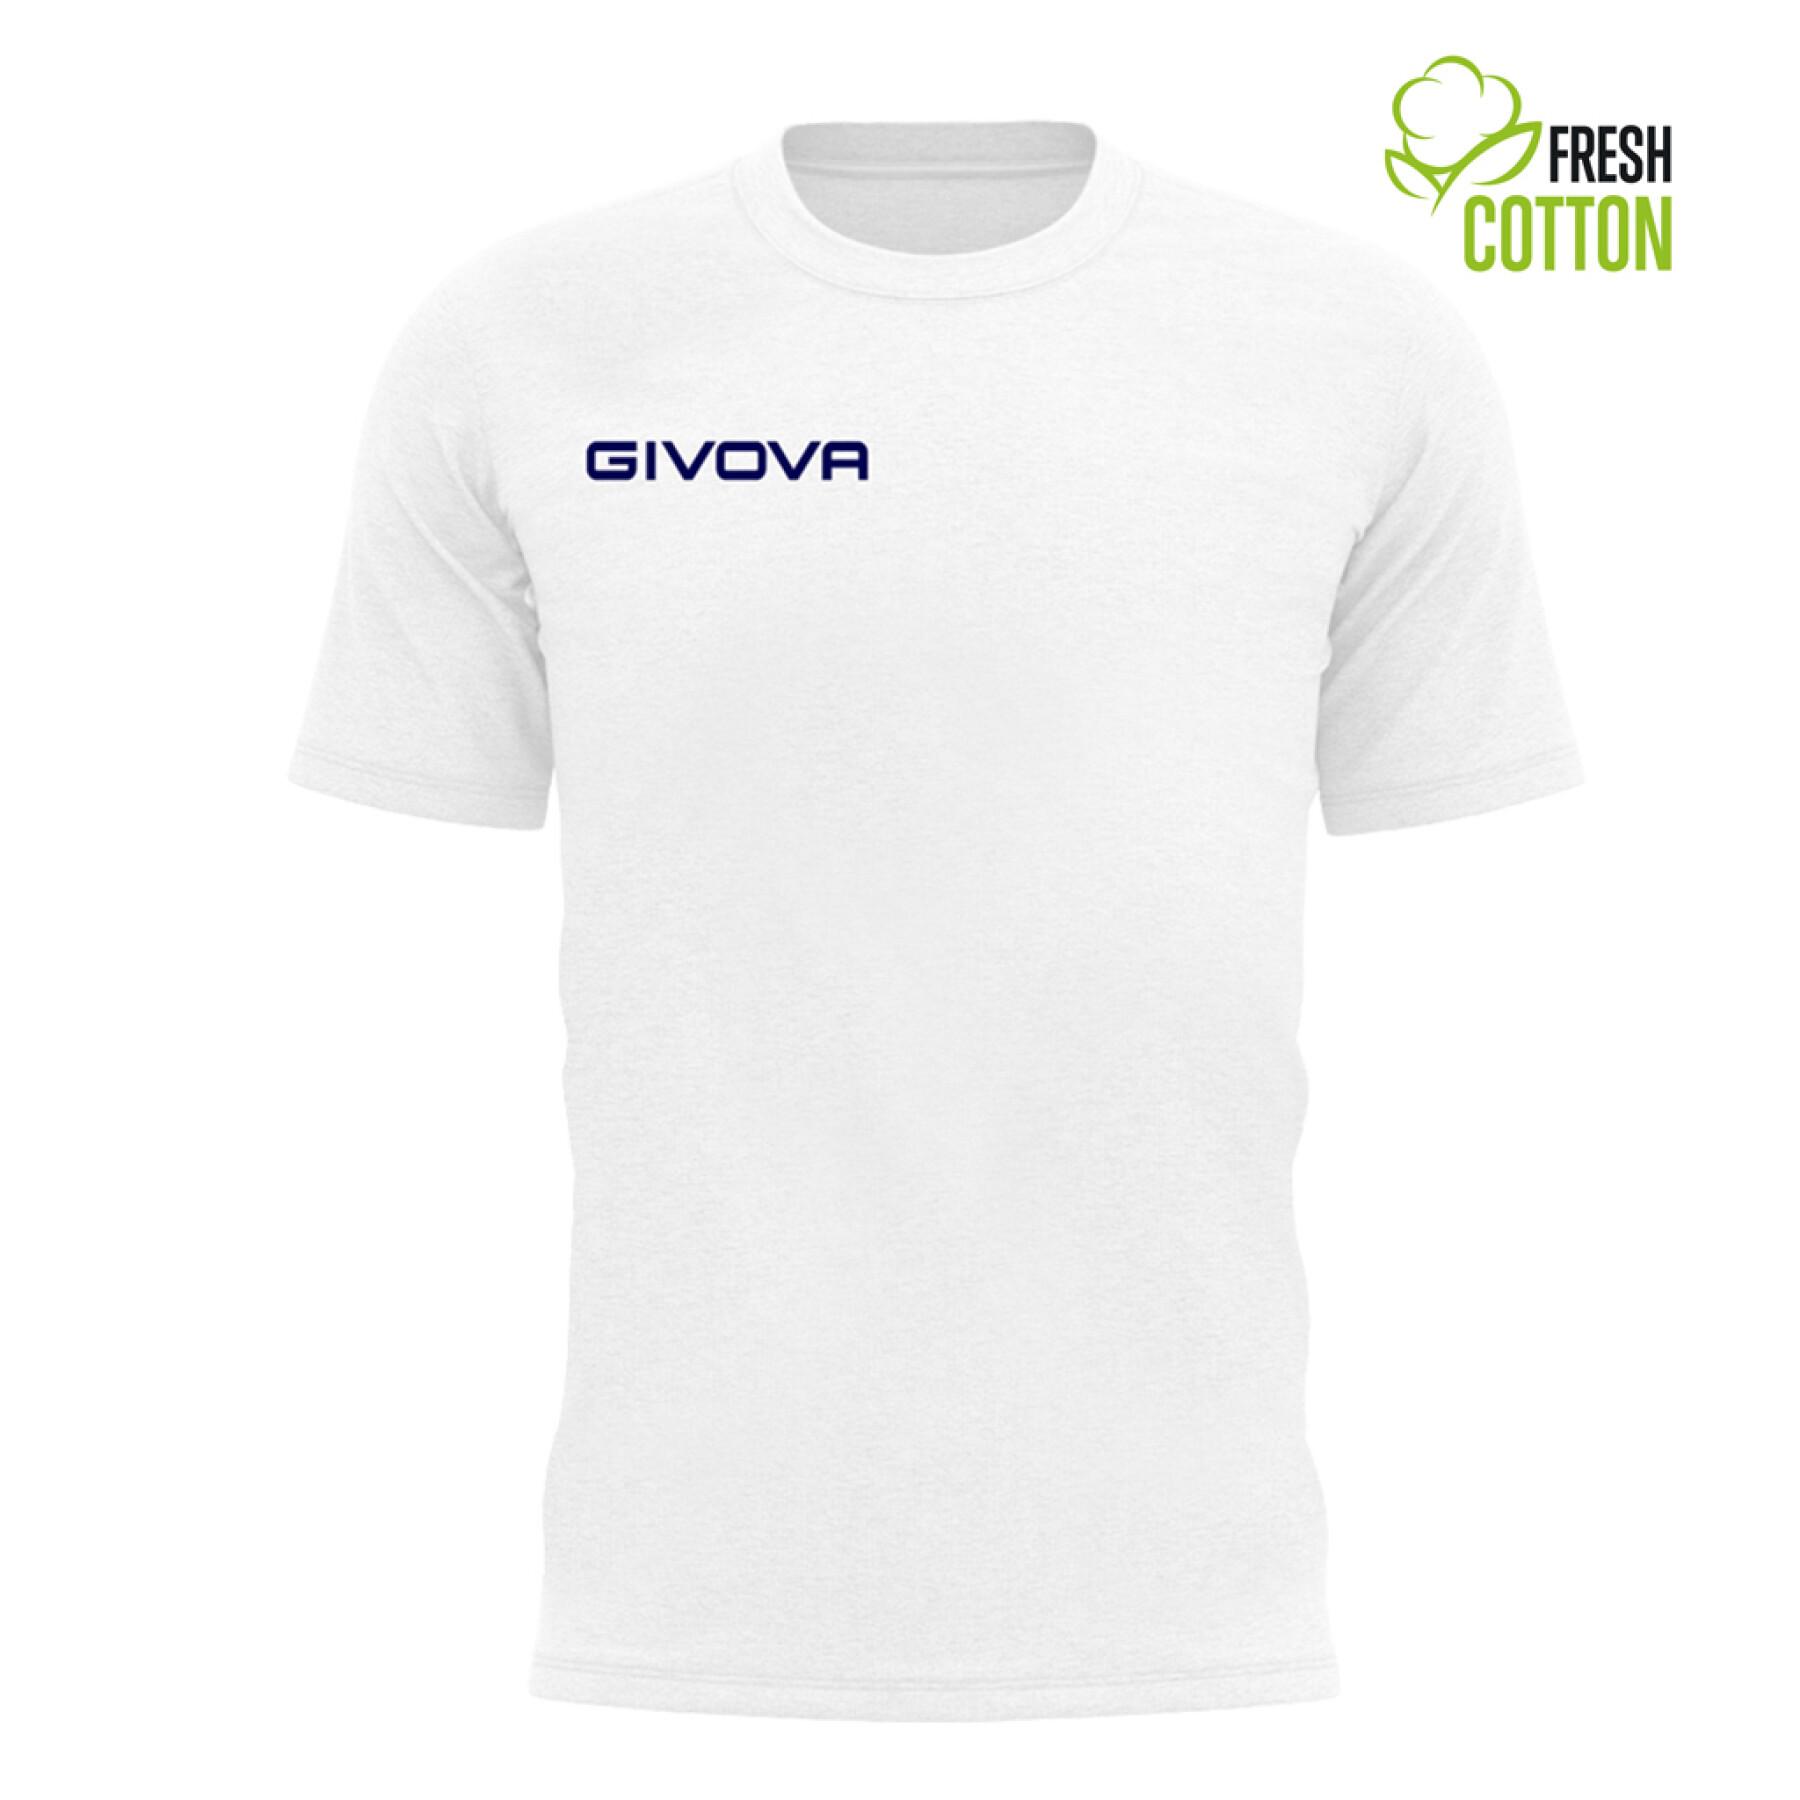 T-shirt cotone bambino Givova Fresh